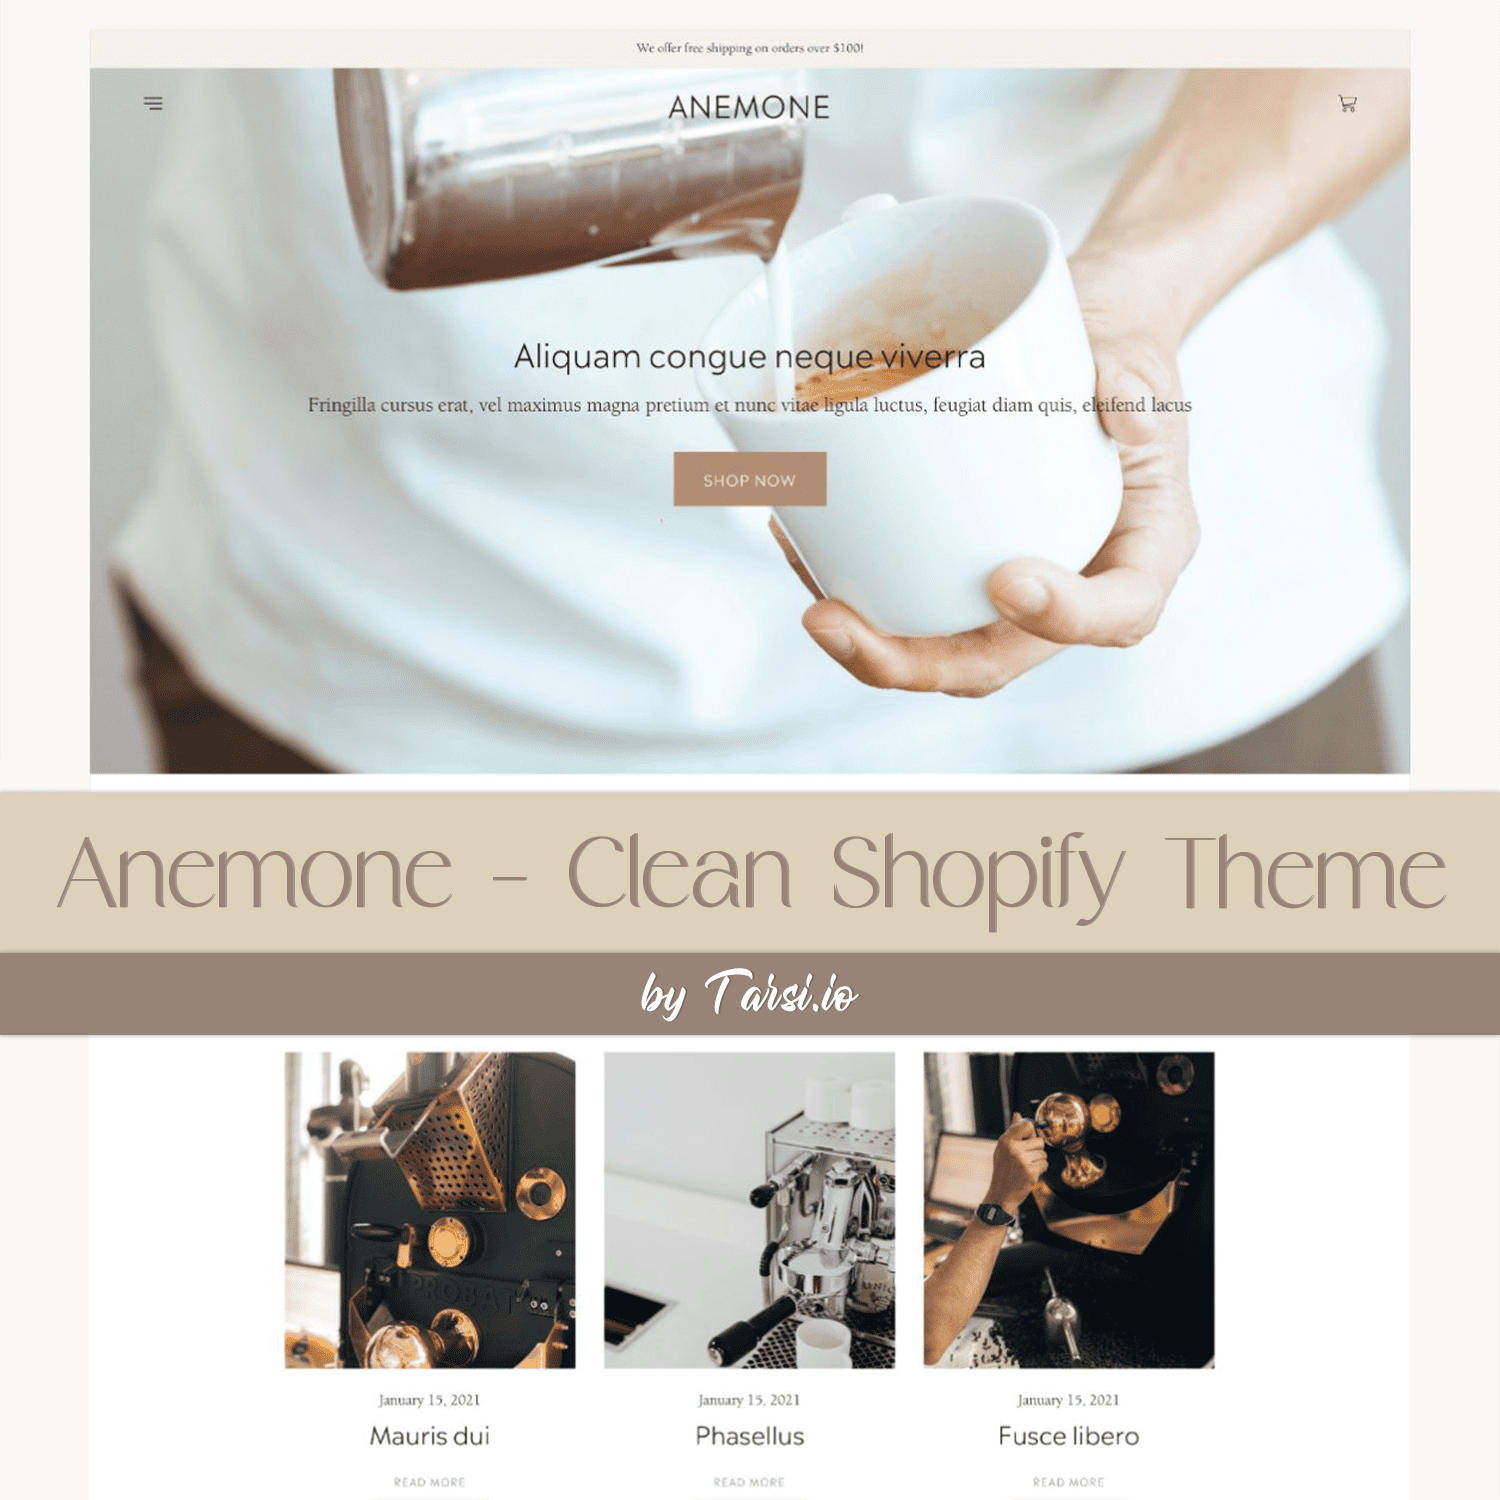 Anemone - Clean Shopify Theme.